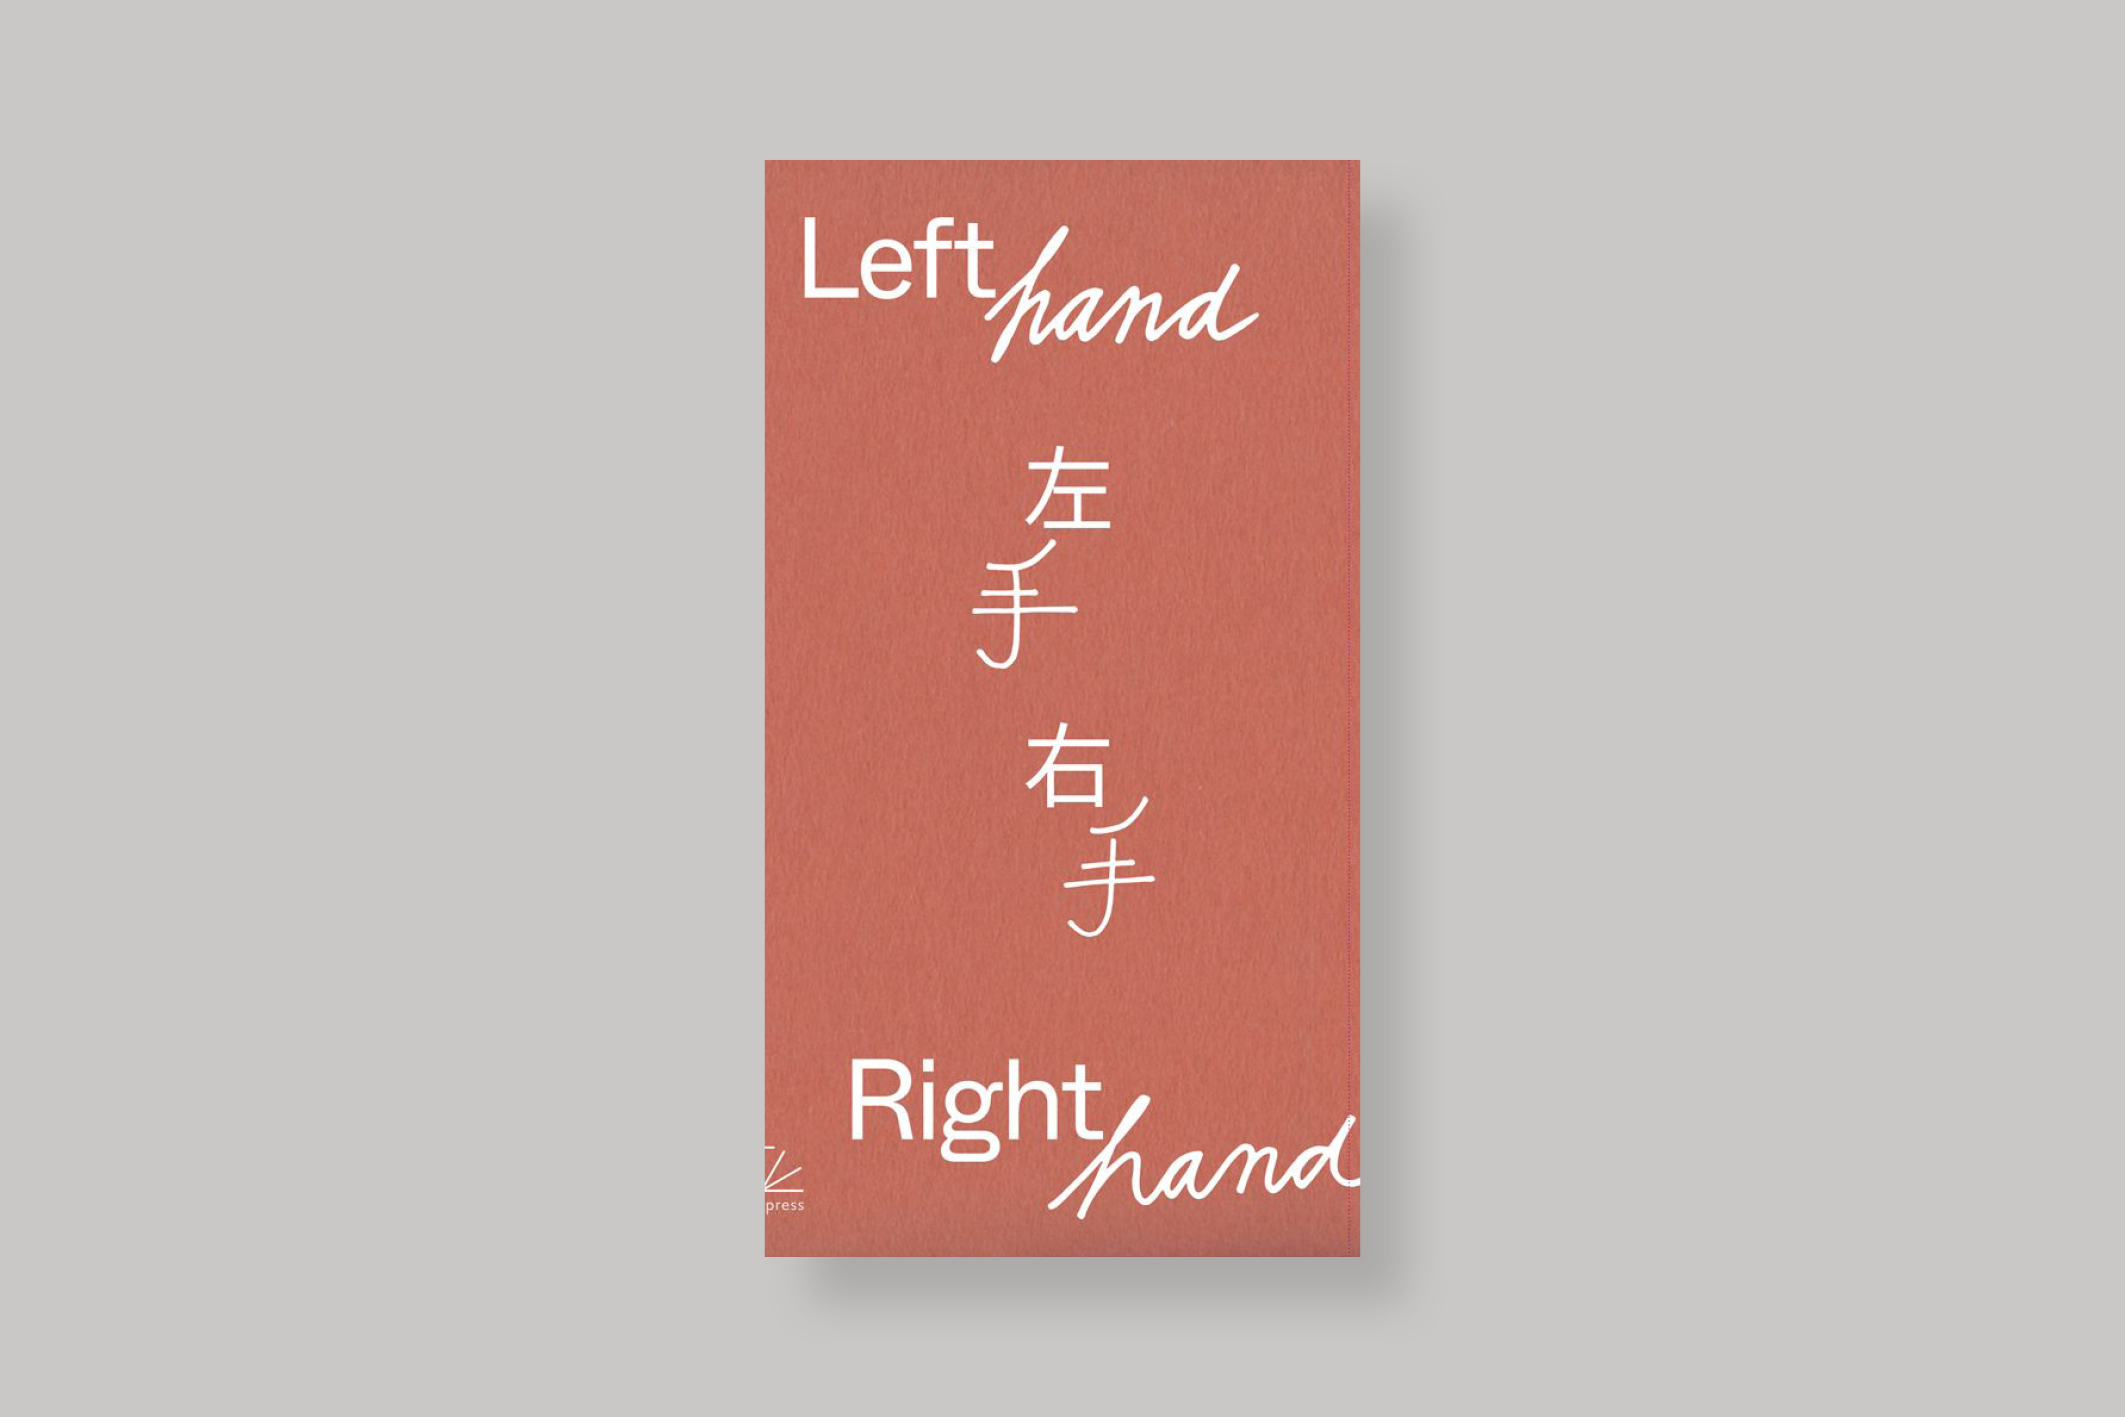 Left-hand-right-hand-Fleur-Van-Dodewaard-Torch-presse-cover